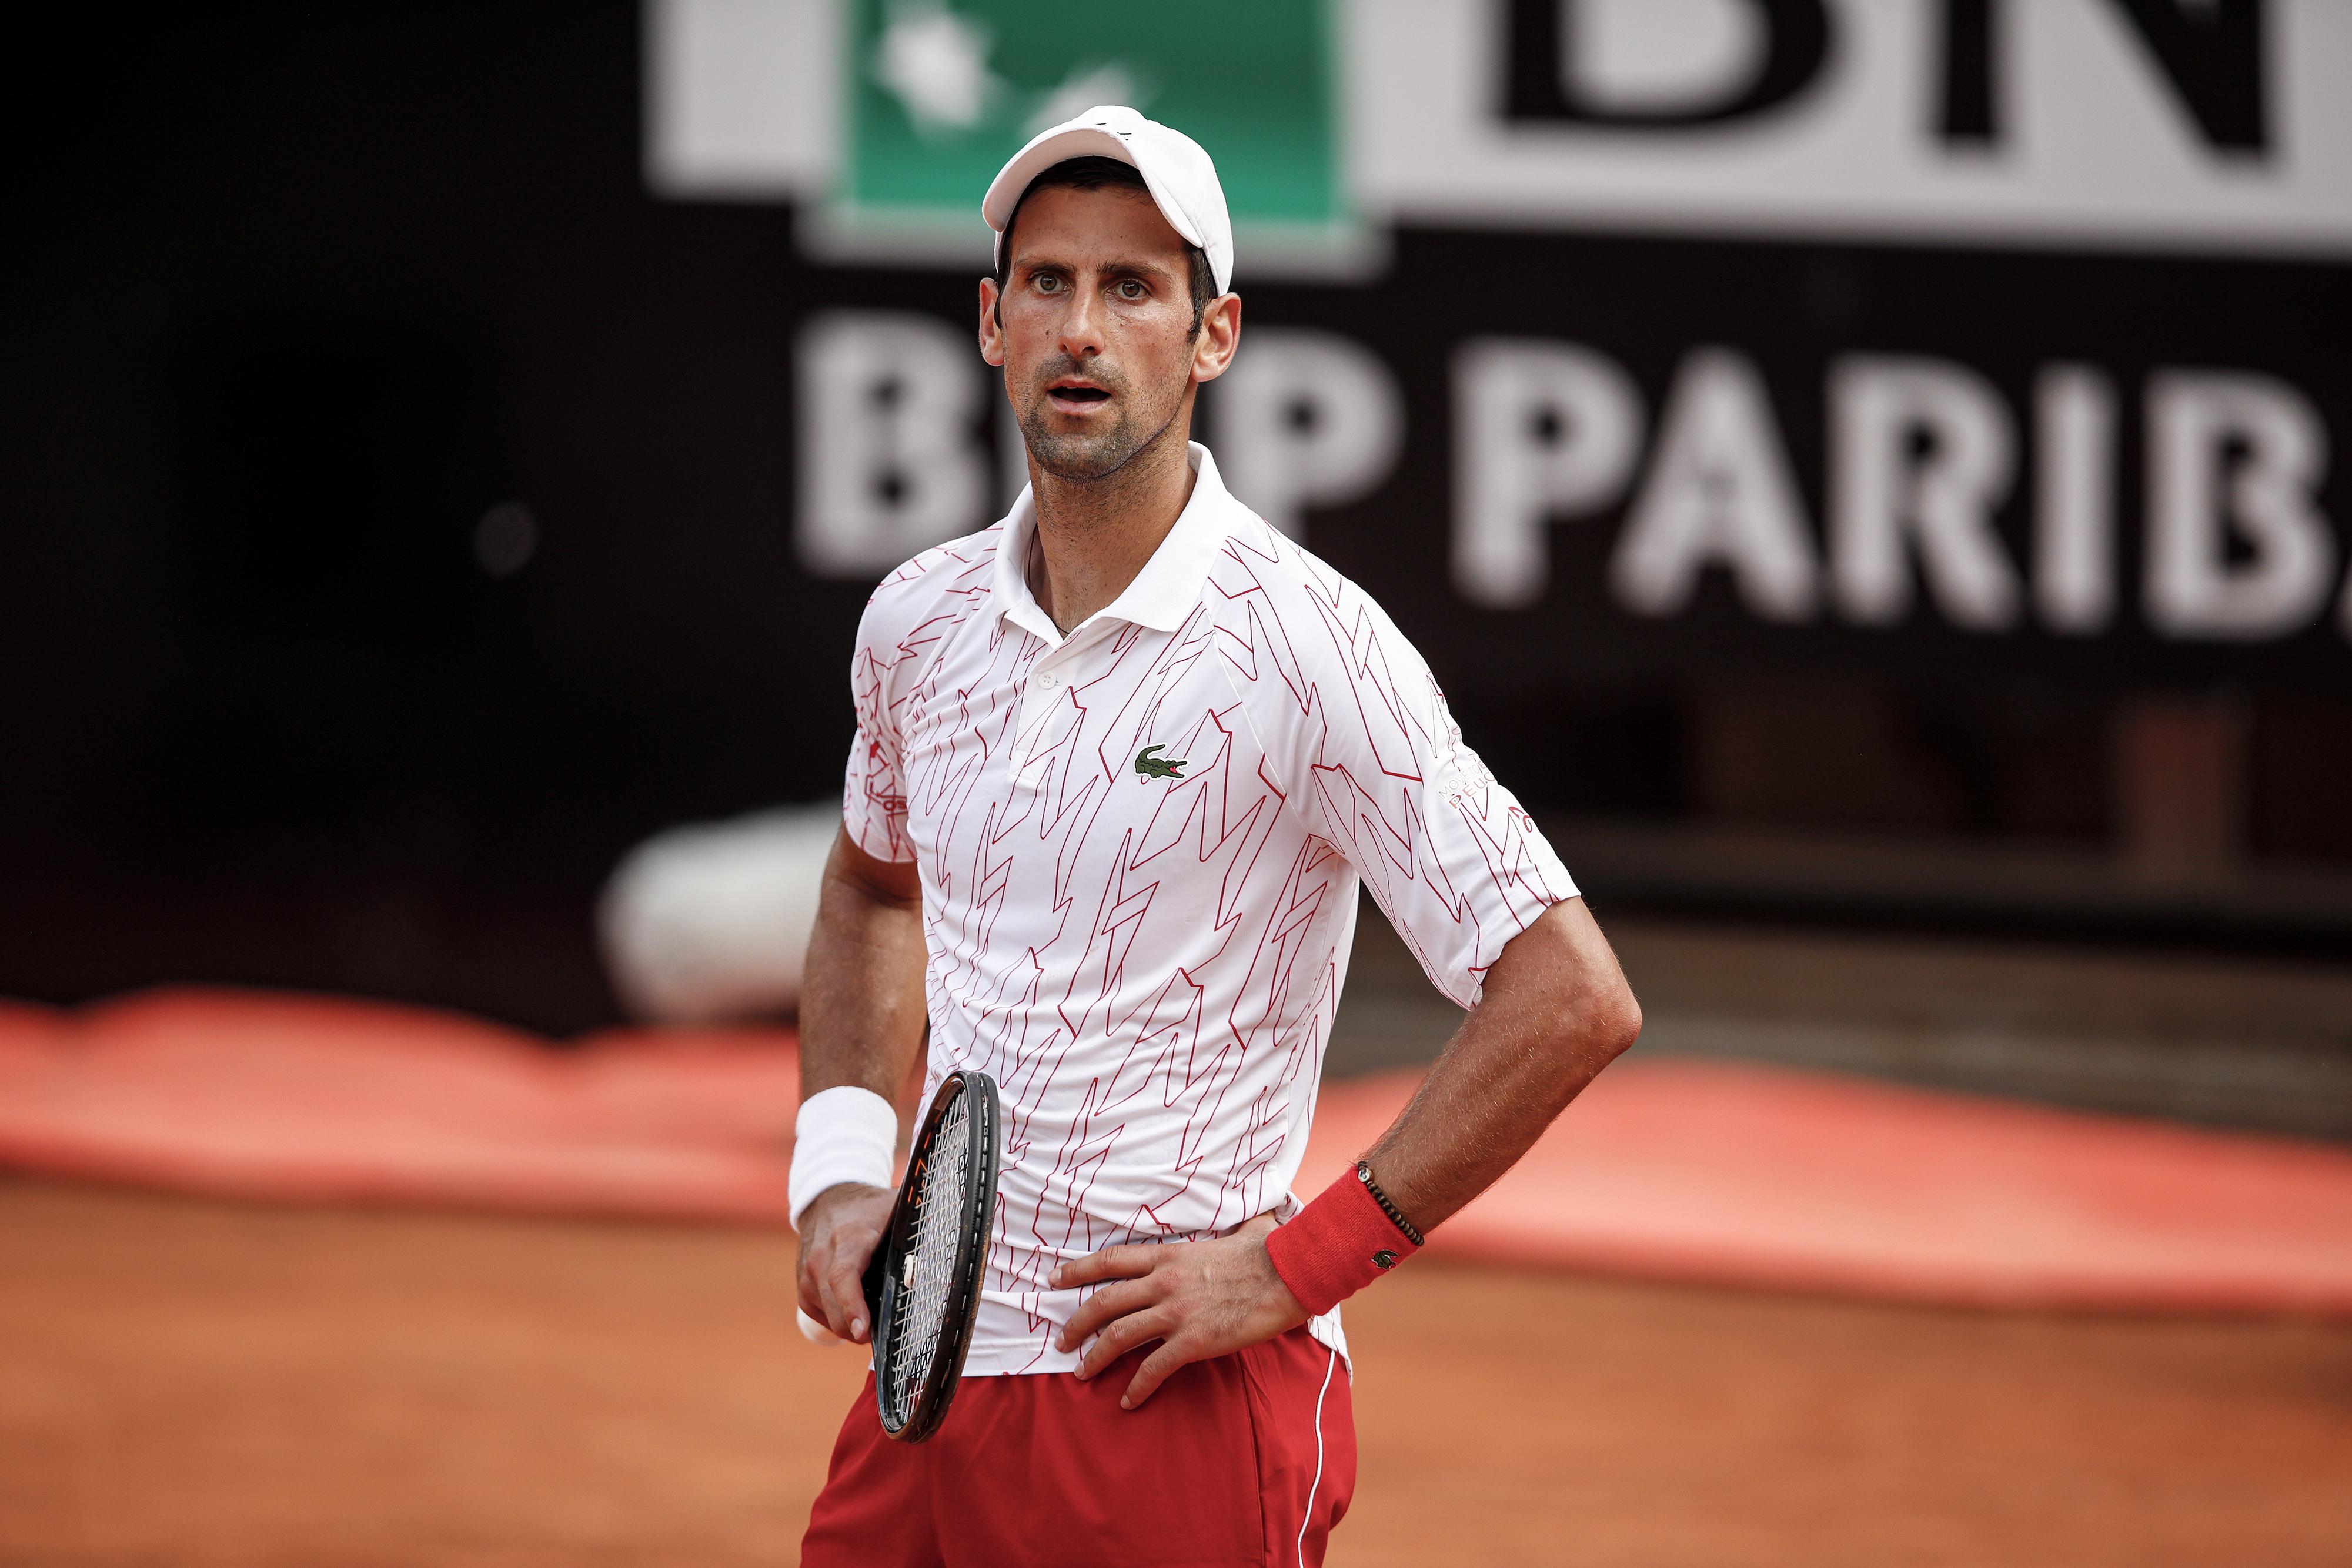 Kuriose Szene: Schiedsrichter verwechselt Djokovic mit Federer